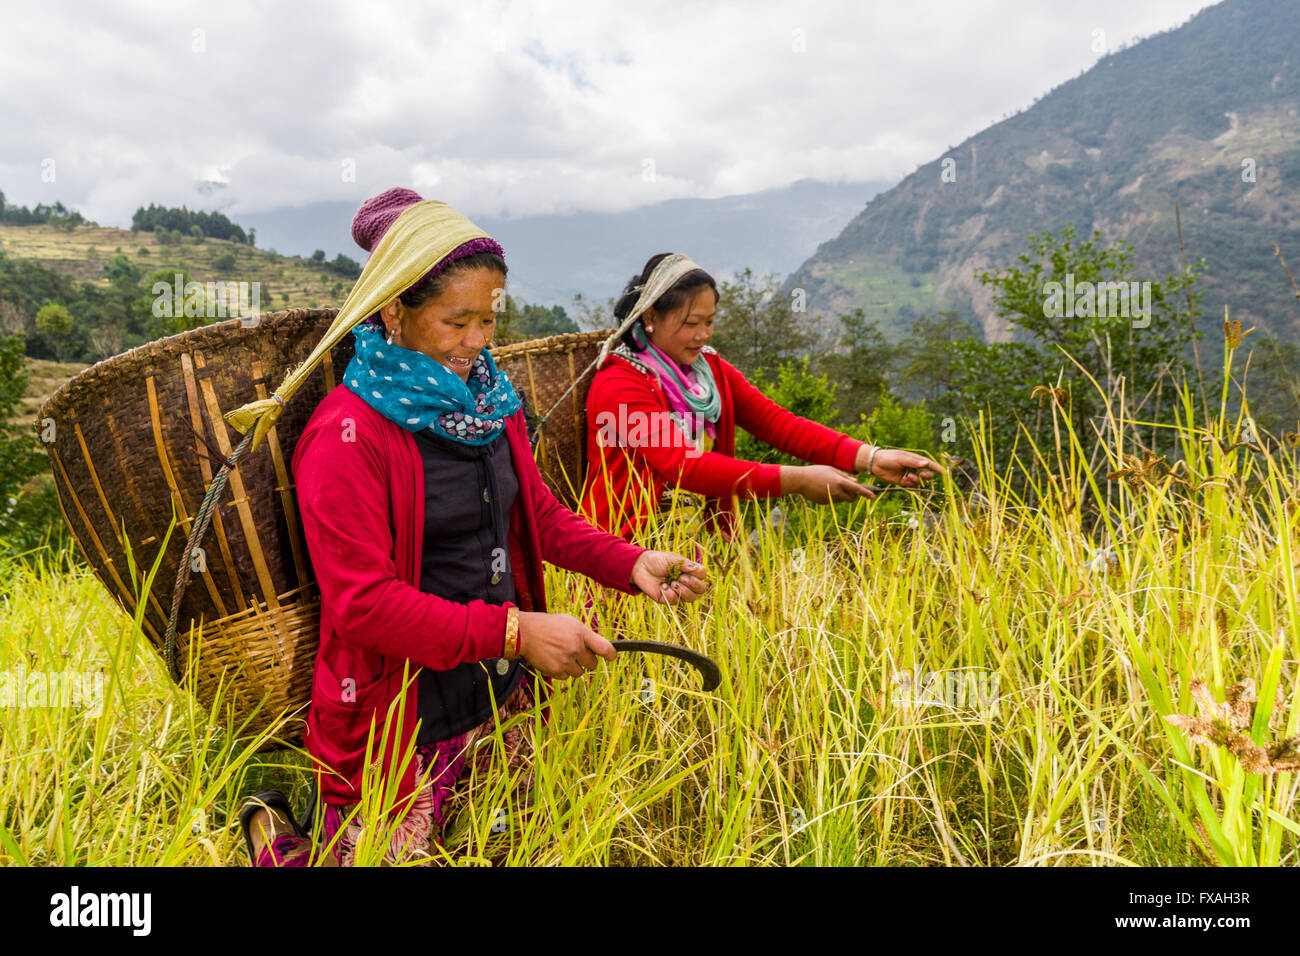 Les femmes avec des paniers sur le dos sont le millet de récolte à la main, Jubhing, Solo Khumbu, Népal Banque D'Images